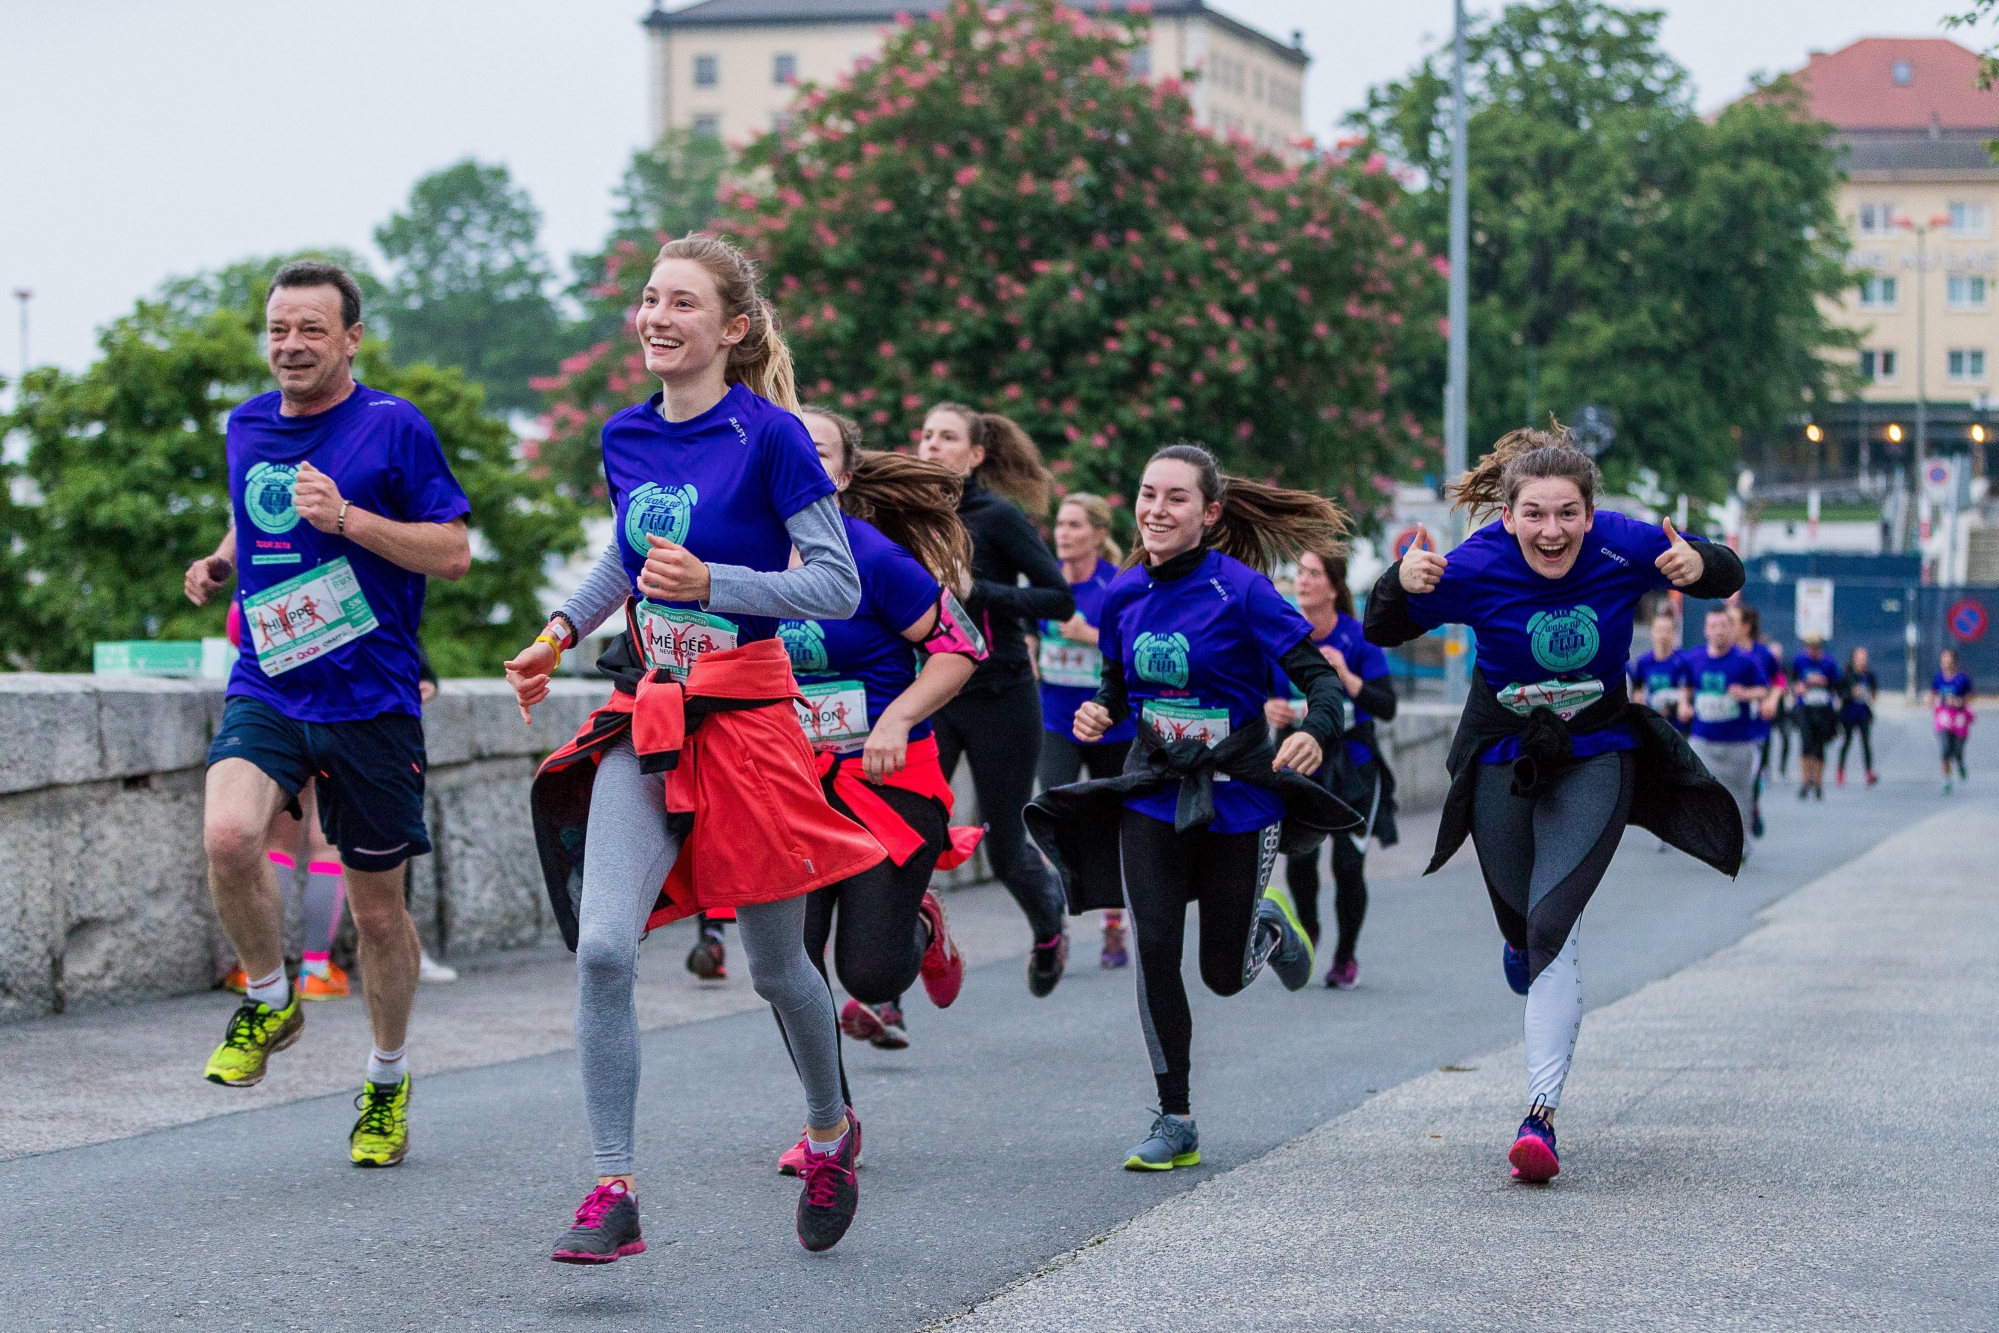 A la fin de la course, à la place du Port de Neuchâtel, les participants du Wake up and run avaient le sourire!  